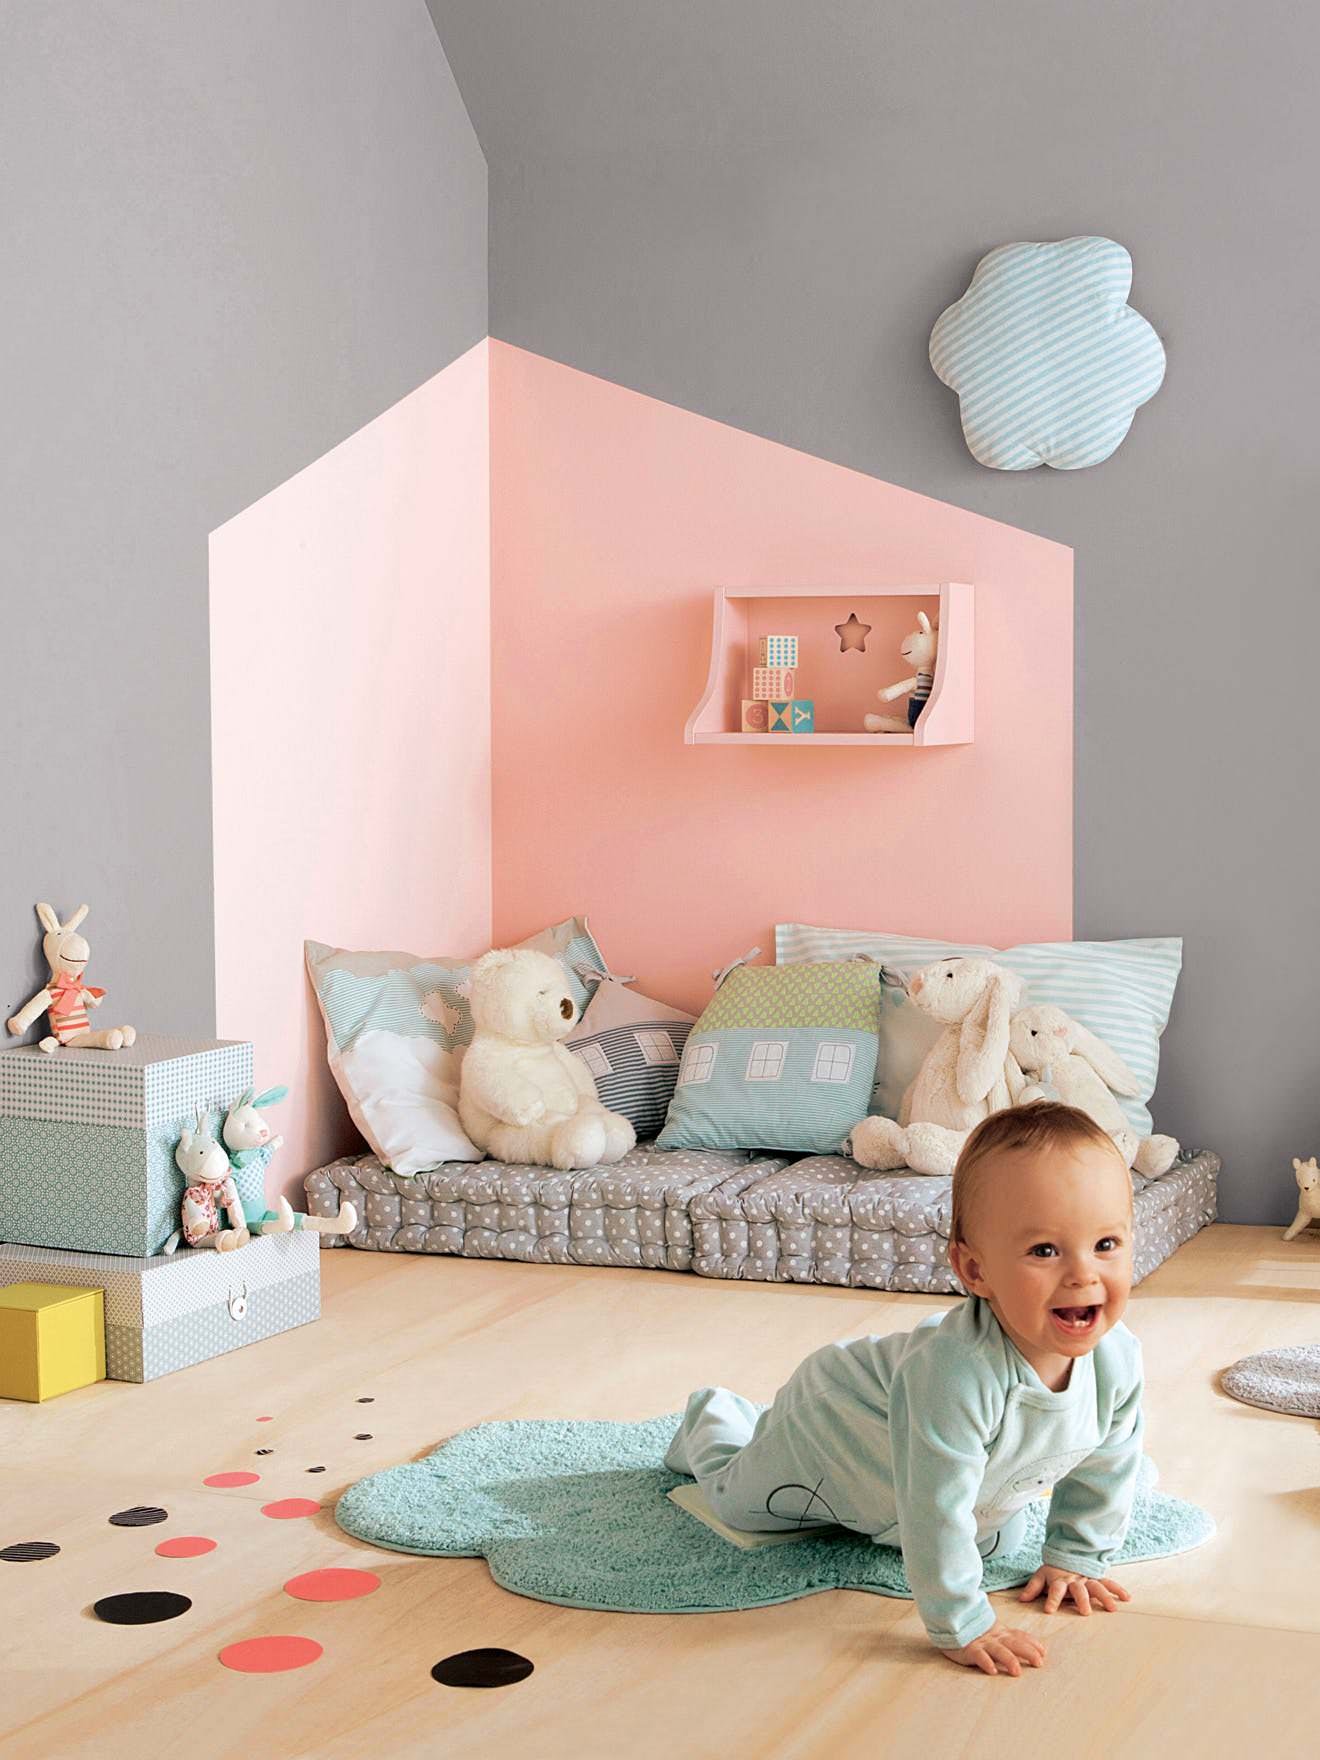 Stanza del bambino in stile Montessori con tenerissimo angolo per il gioco e il relax, con una semplice decorazione alla parete ma di grande effetto - colori rosa e grigio tortora